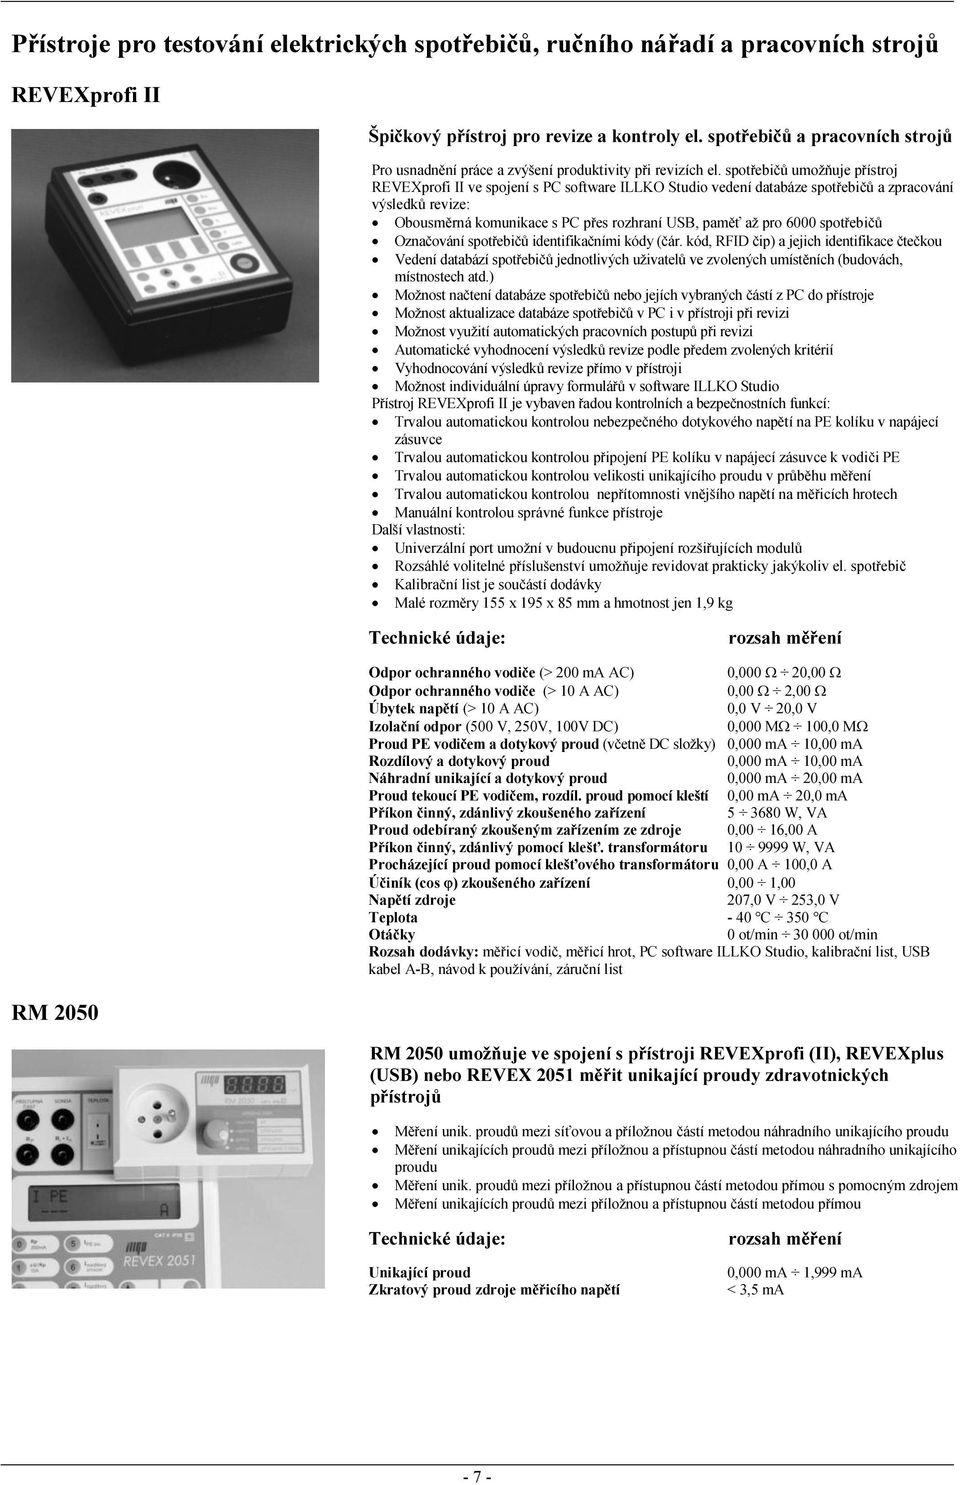 spotřebičů umožňuje přístroj REVEXprofi II ve spojení s PC software ILLKO Studio vedení databáze spotřebičů a zpracování výsledků revize: Obousměrná komunikace s PC přes rozhraní USB, paměť až pro